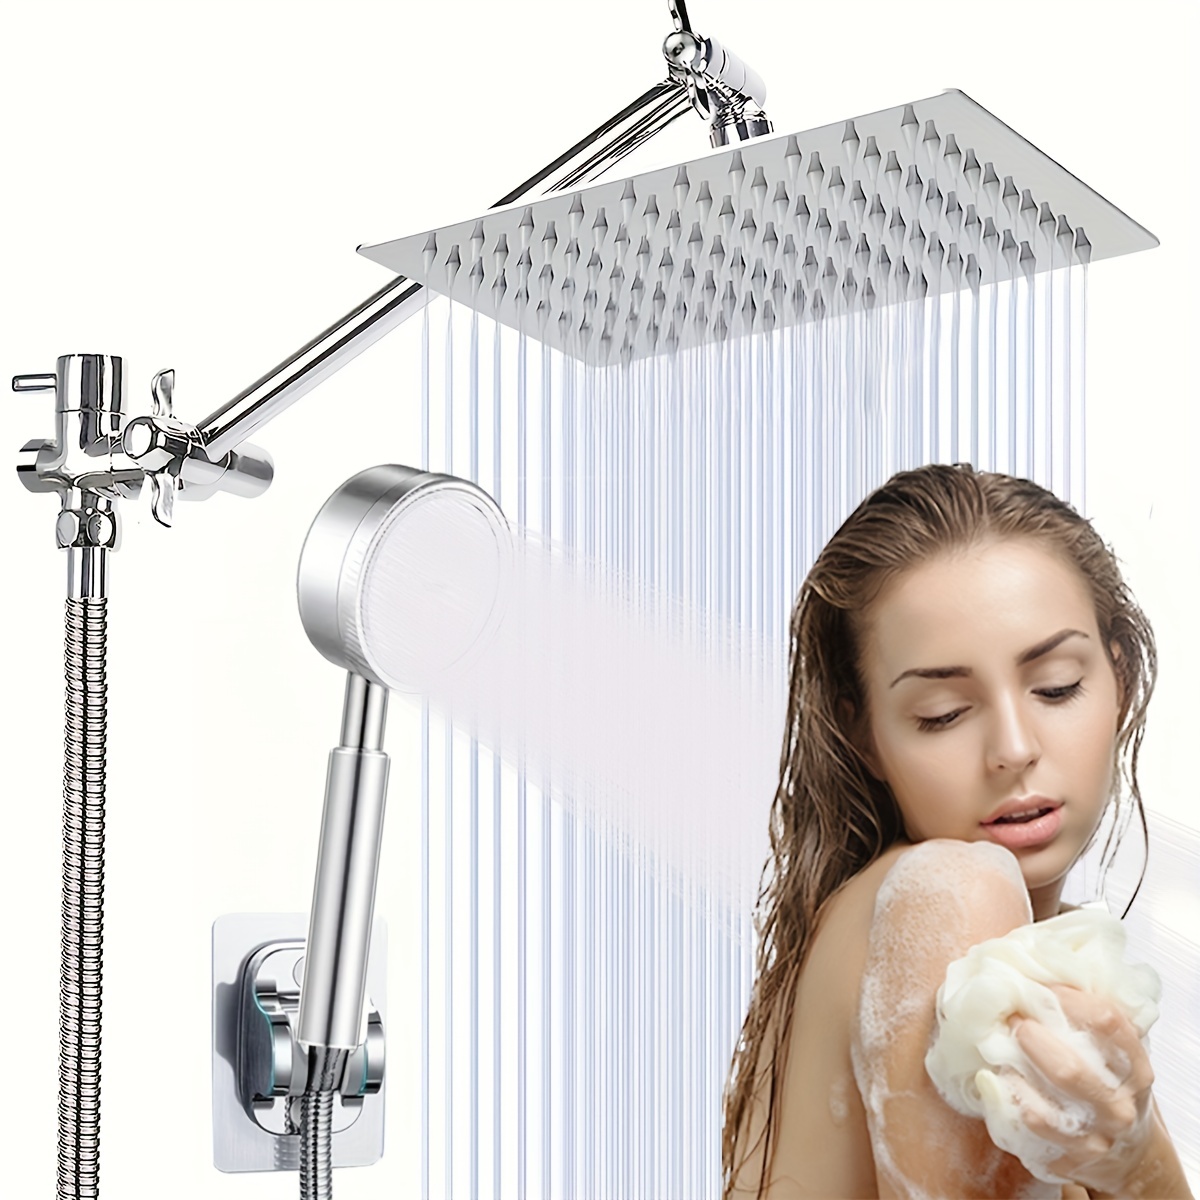  Alcachofa de ducha de alta presión con acabado cromado, ángulos  ajustables, el reemplazo perfecto ajustable para tus cabezales de ducha de  baño. : Herramientas y Mejoras del Hogar